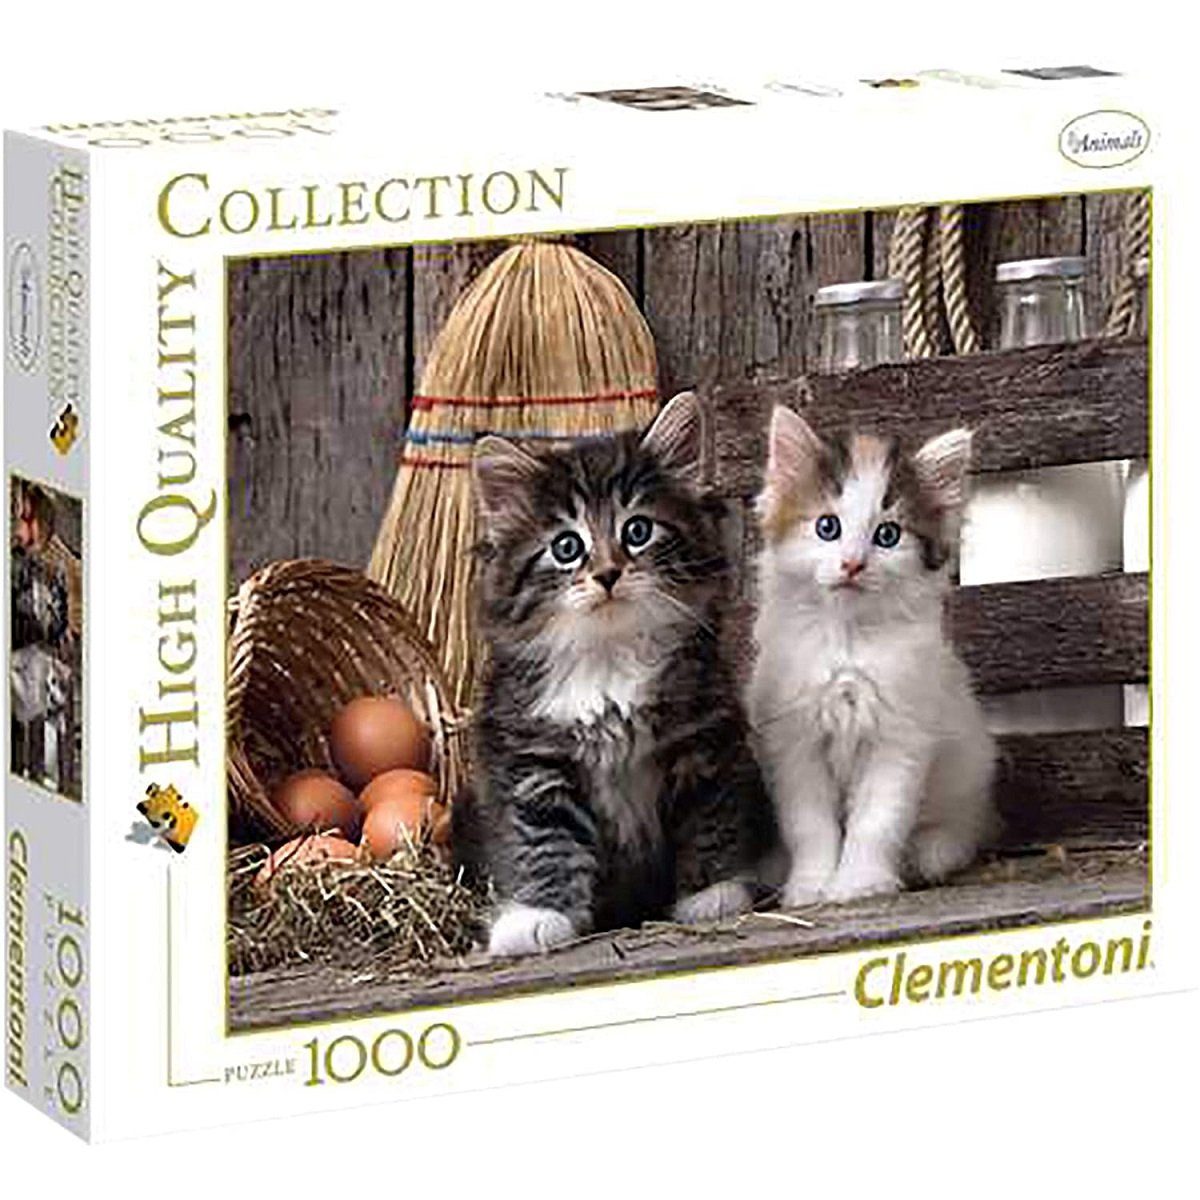 Clementoni® Puzzle Clementoni - Lovely Kittens, 1000 Teile Puzzle, 1000 Puzzleteile